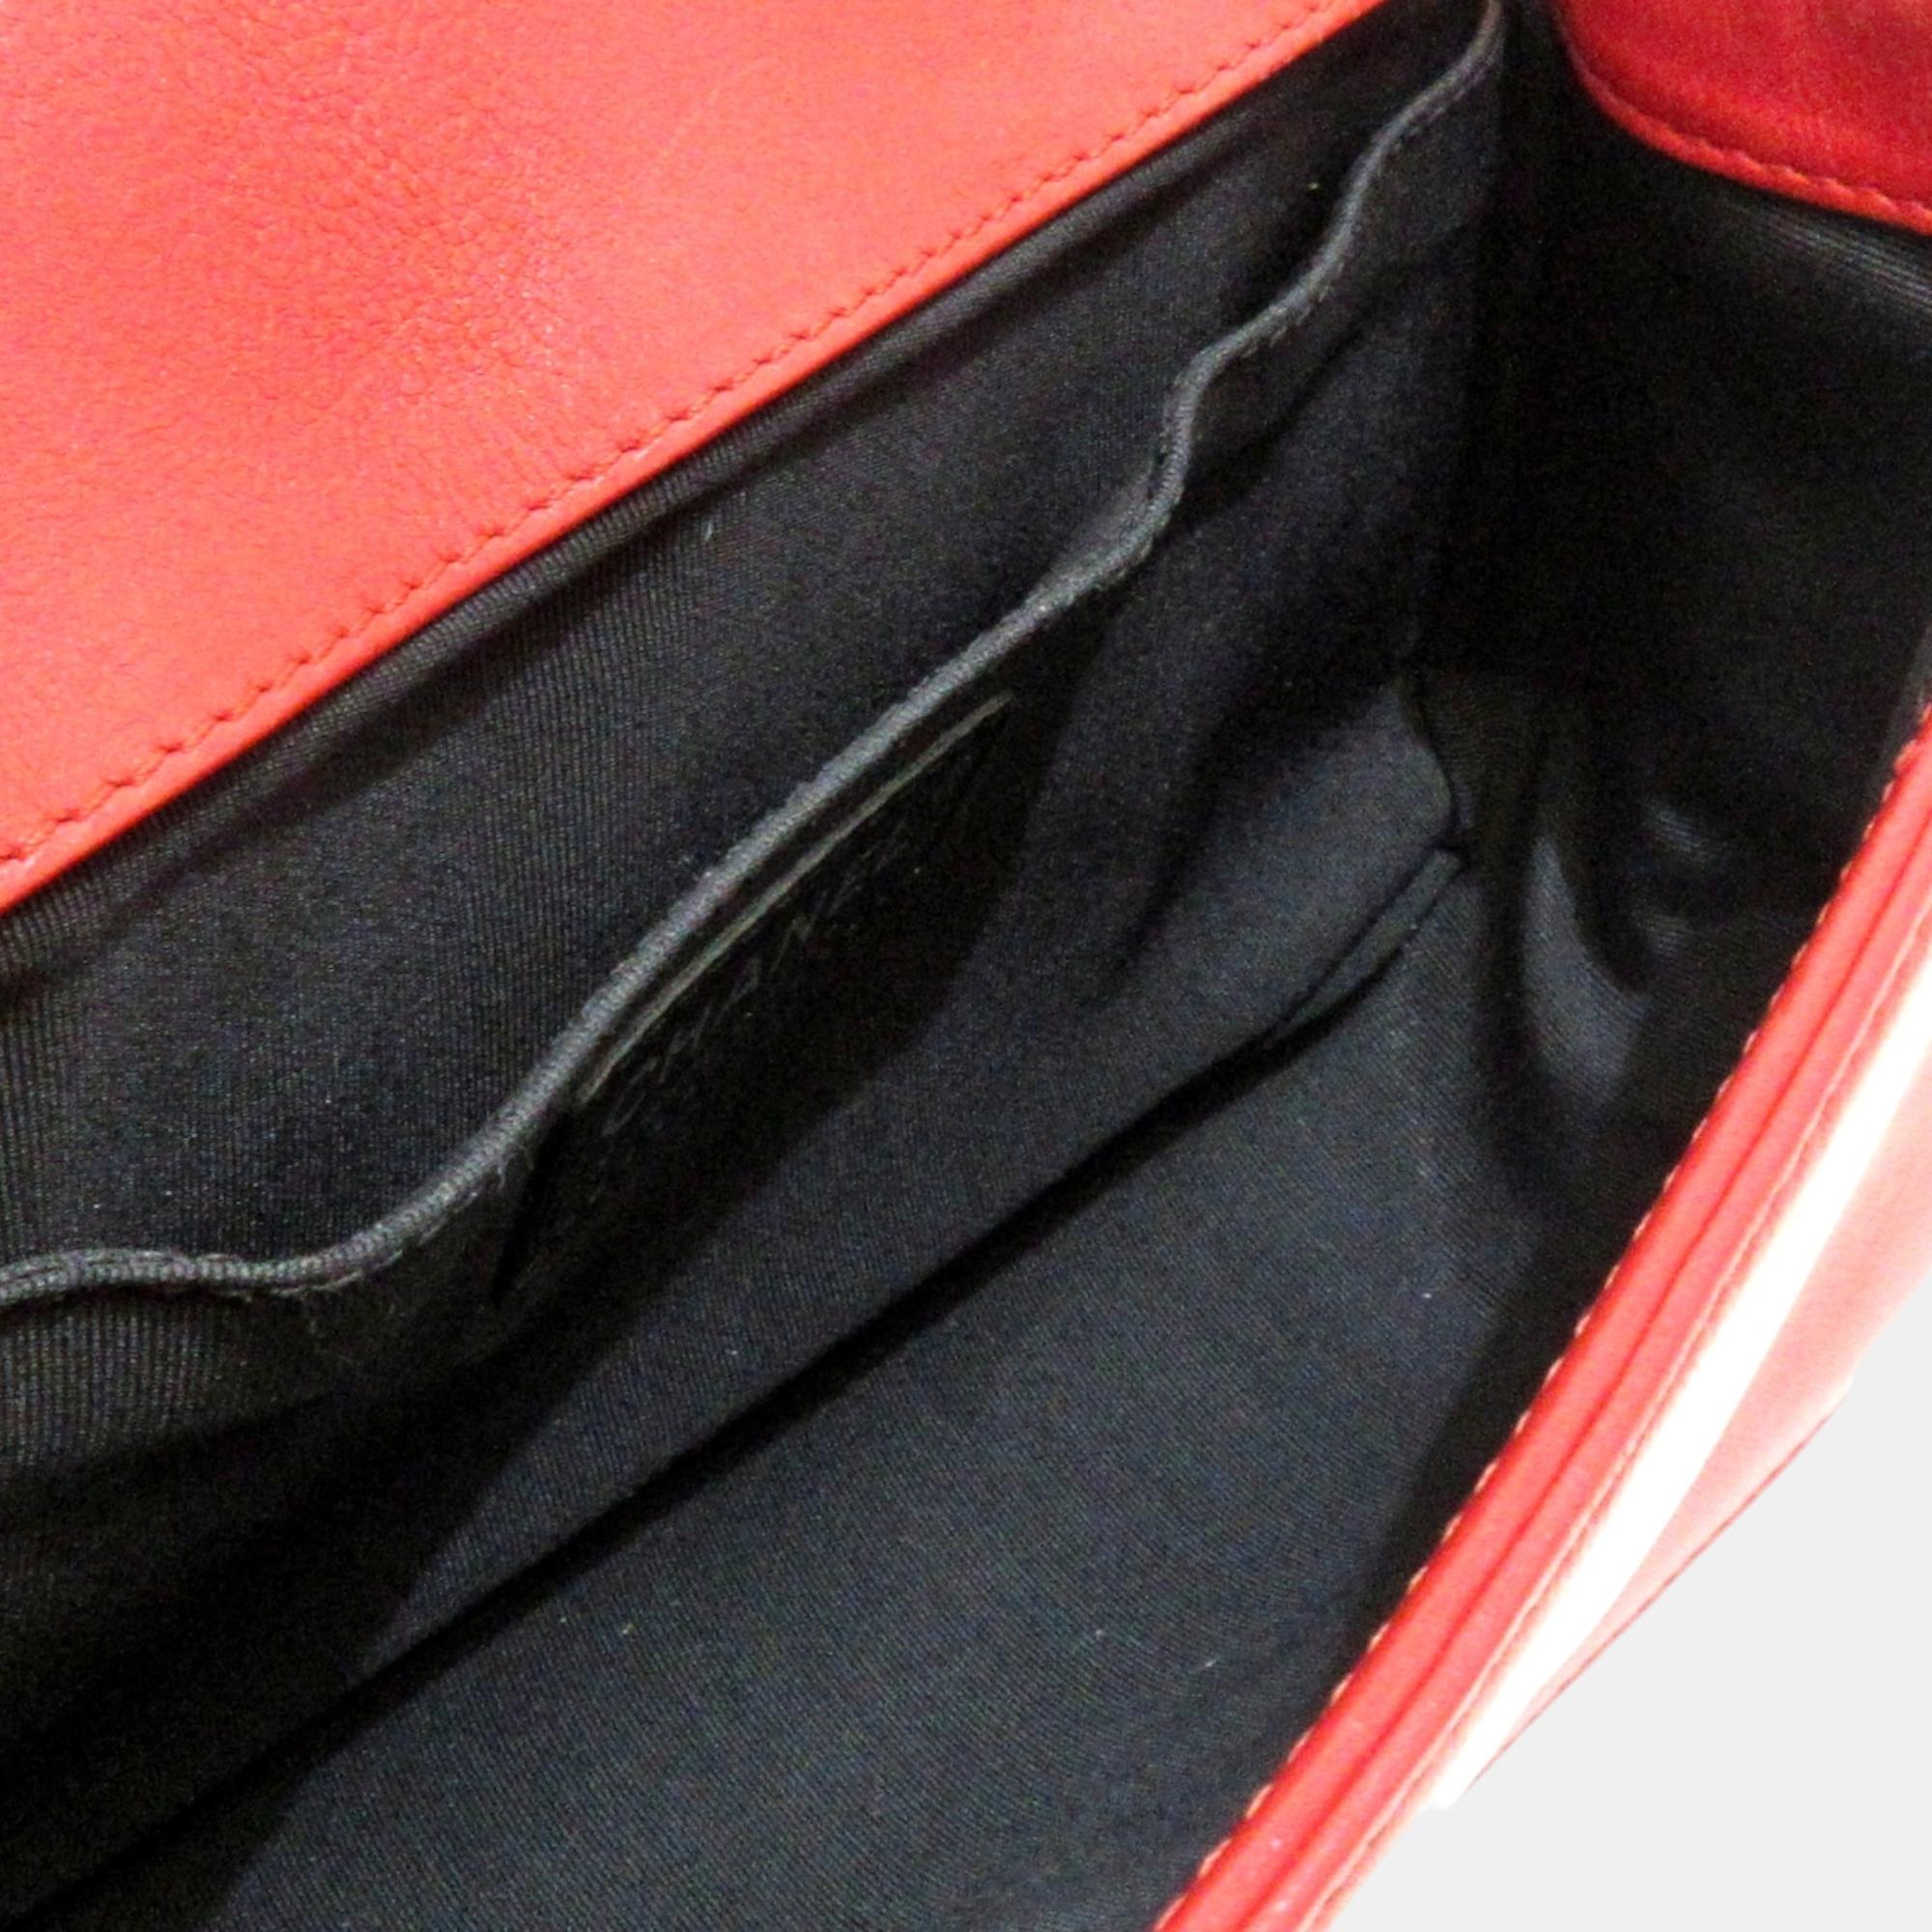 Chanel Red Leather Boy Shoulder Bag